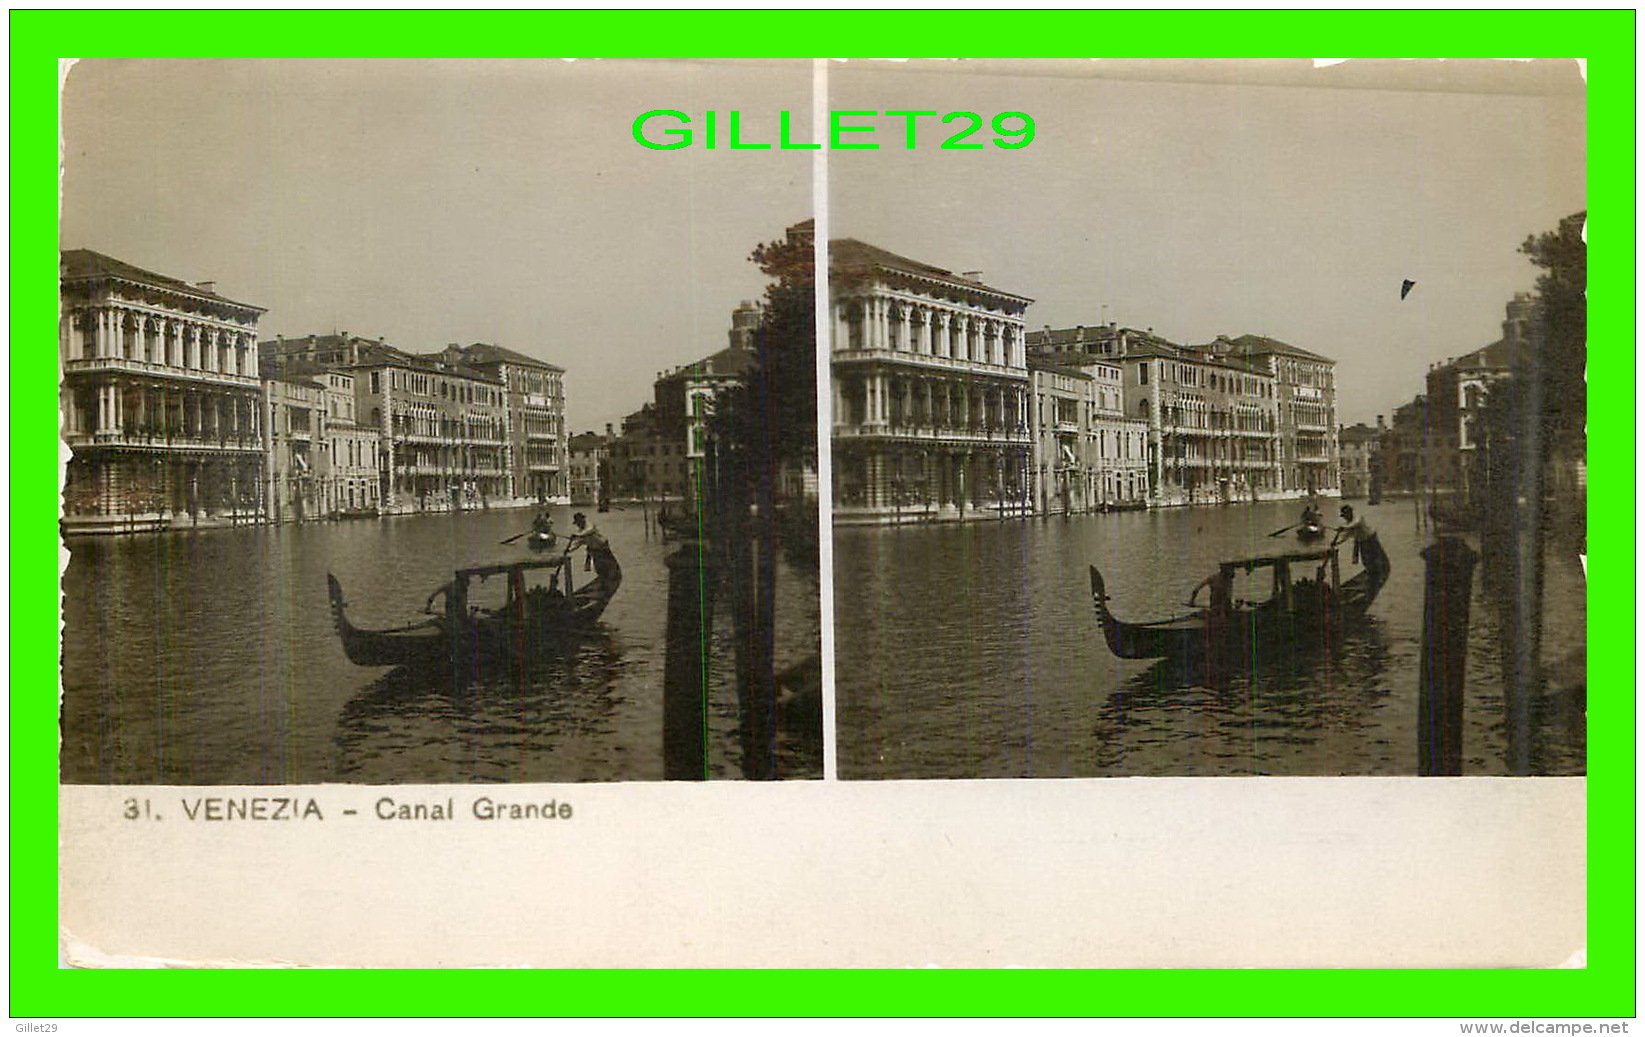 VENEZIA, ITALIA - CANAL GRANDE - FOT. VITO GENERINI - STAMPA CELERE AL BROMURO - - Venezia (Venice)